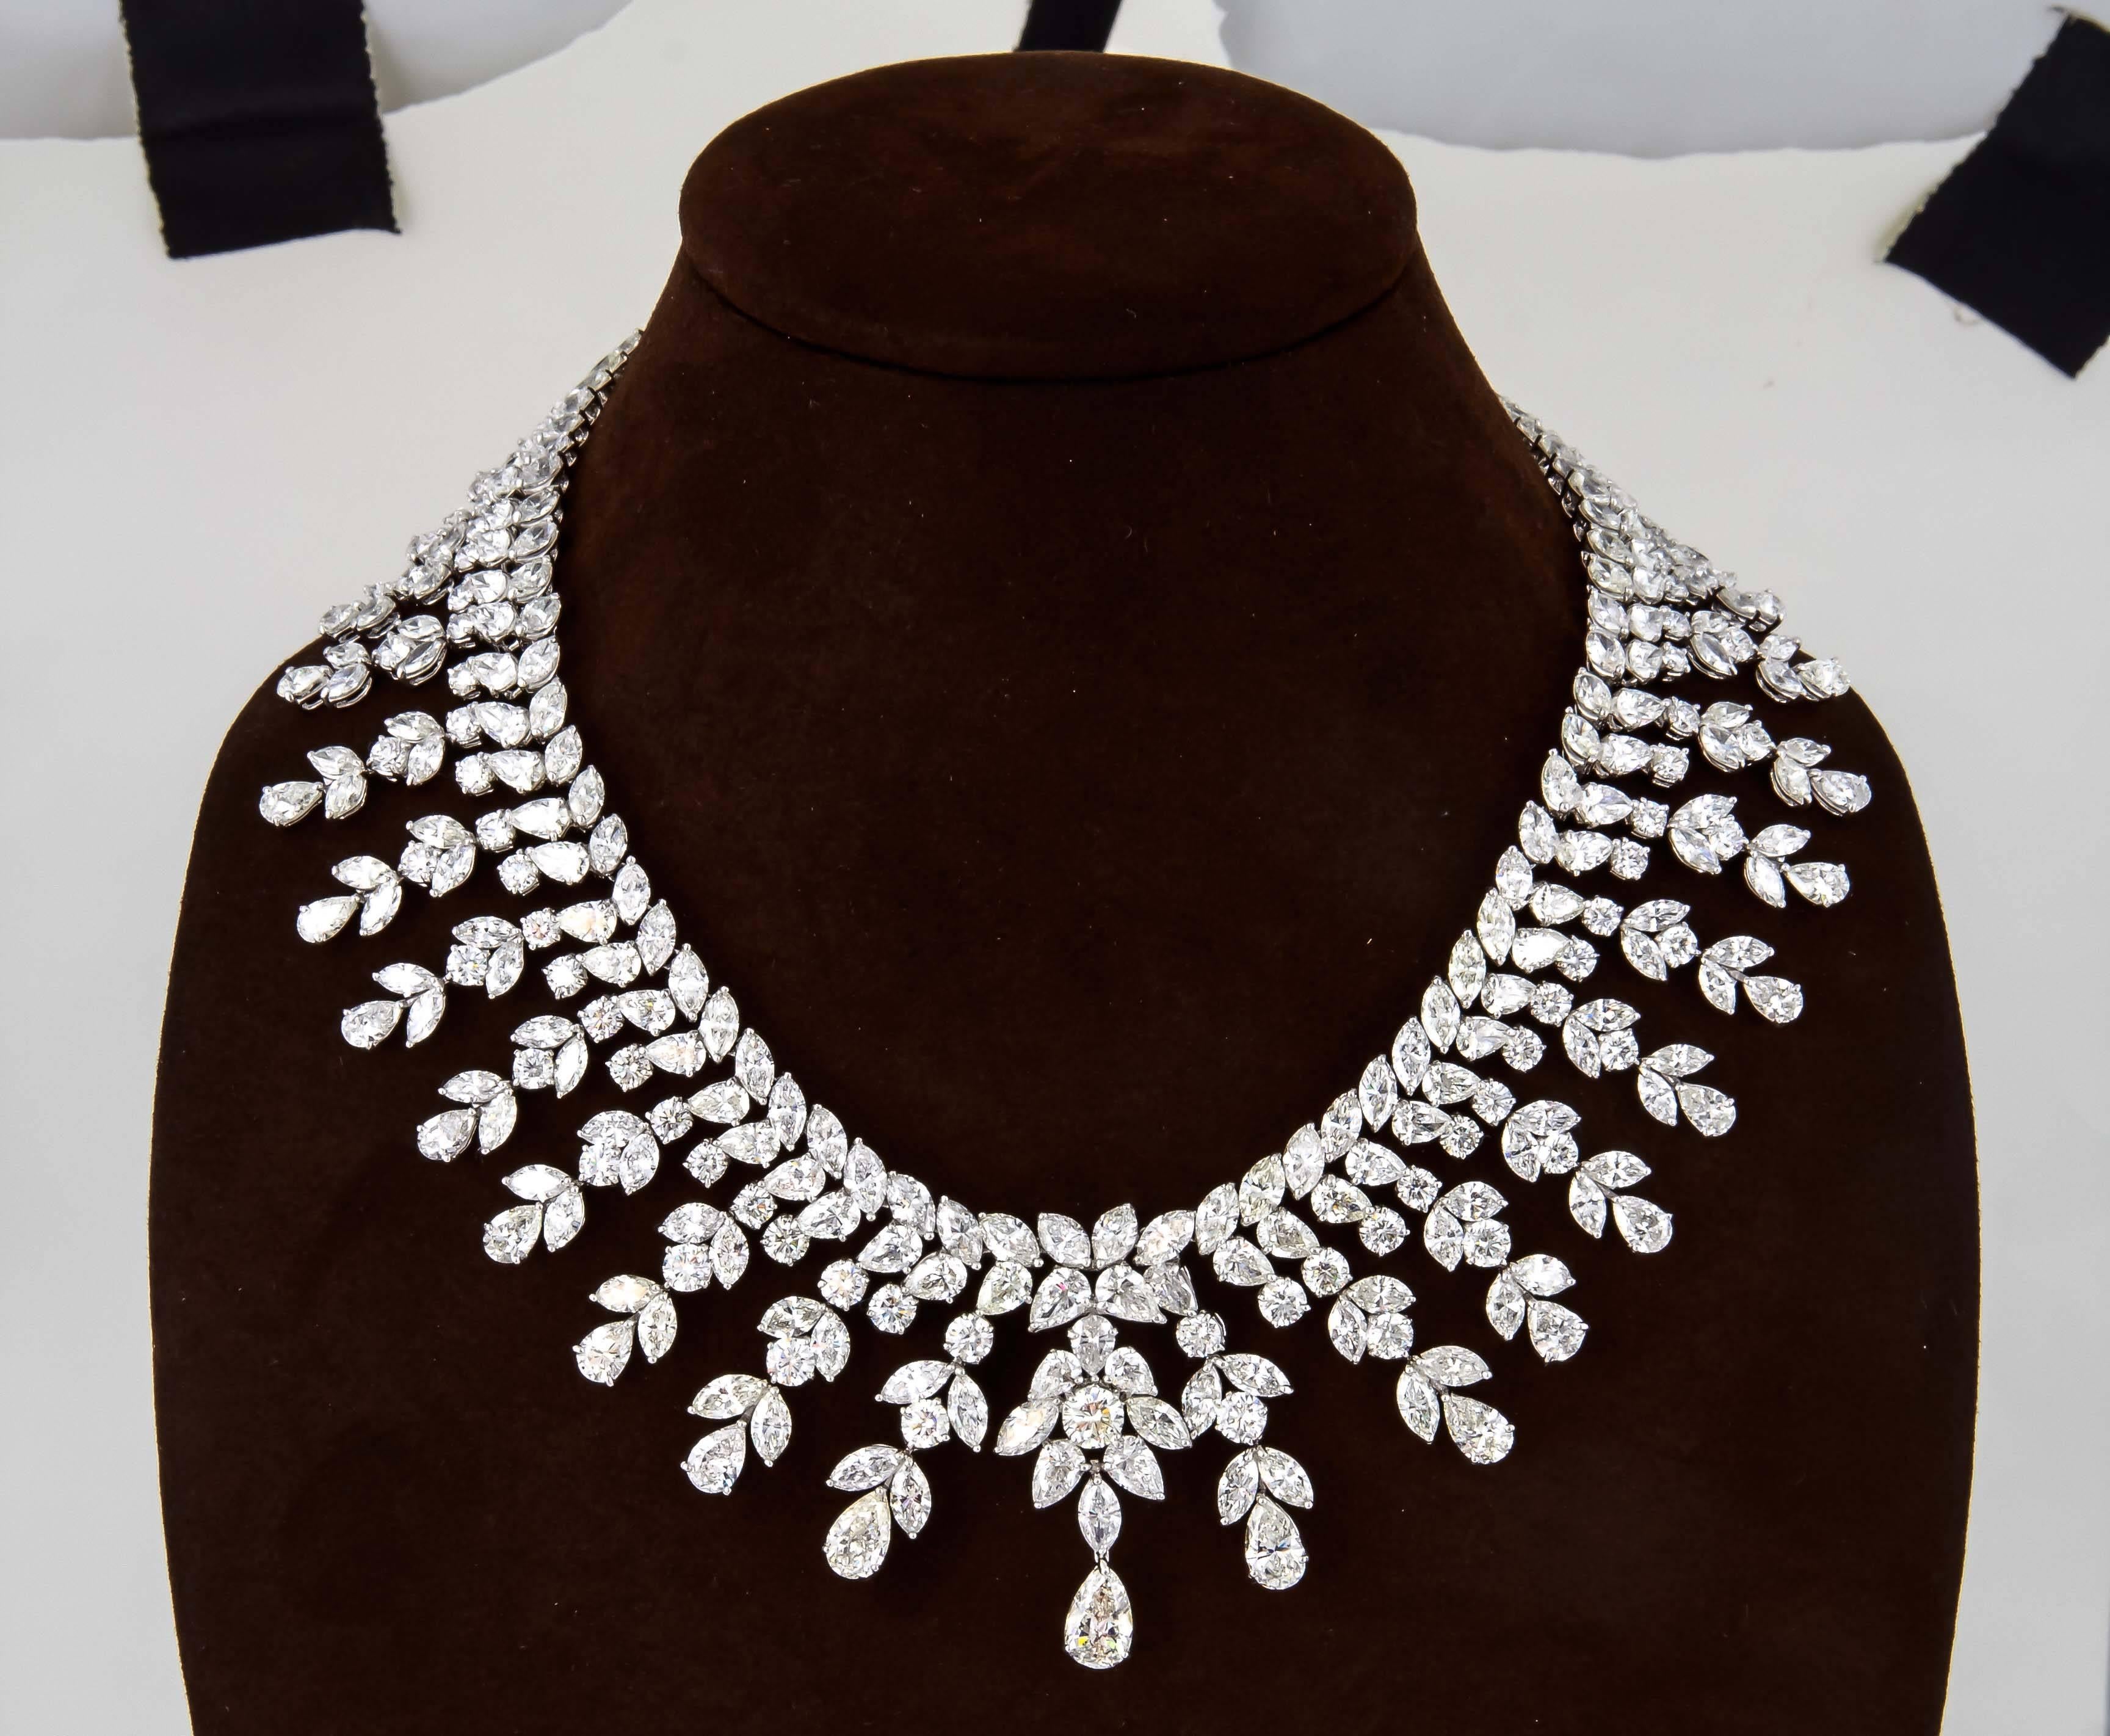 150 carat diamond necklace